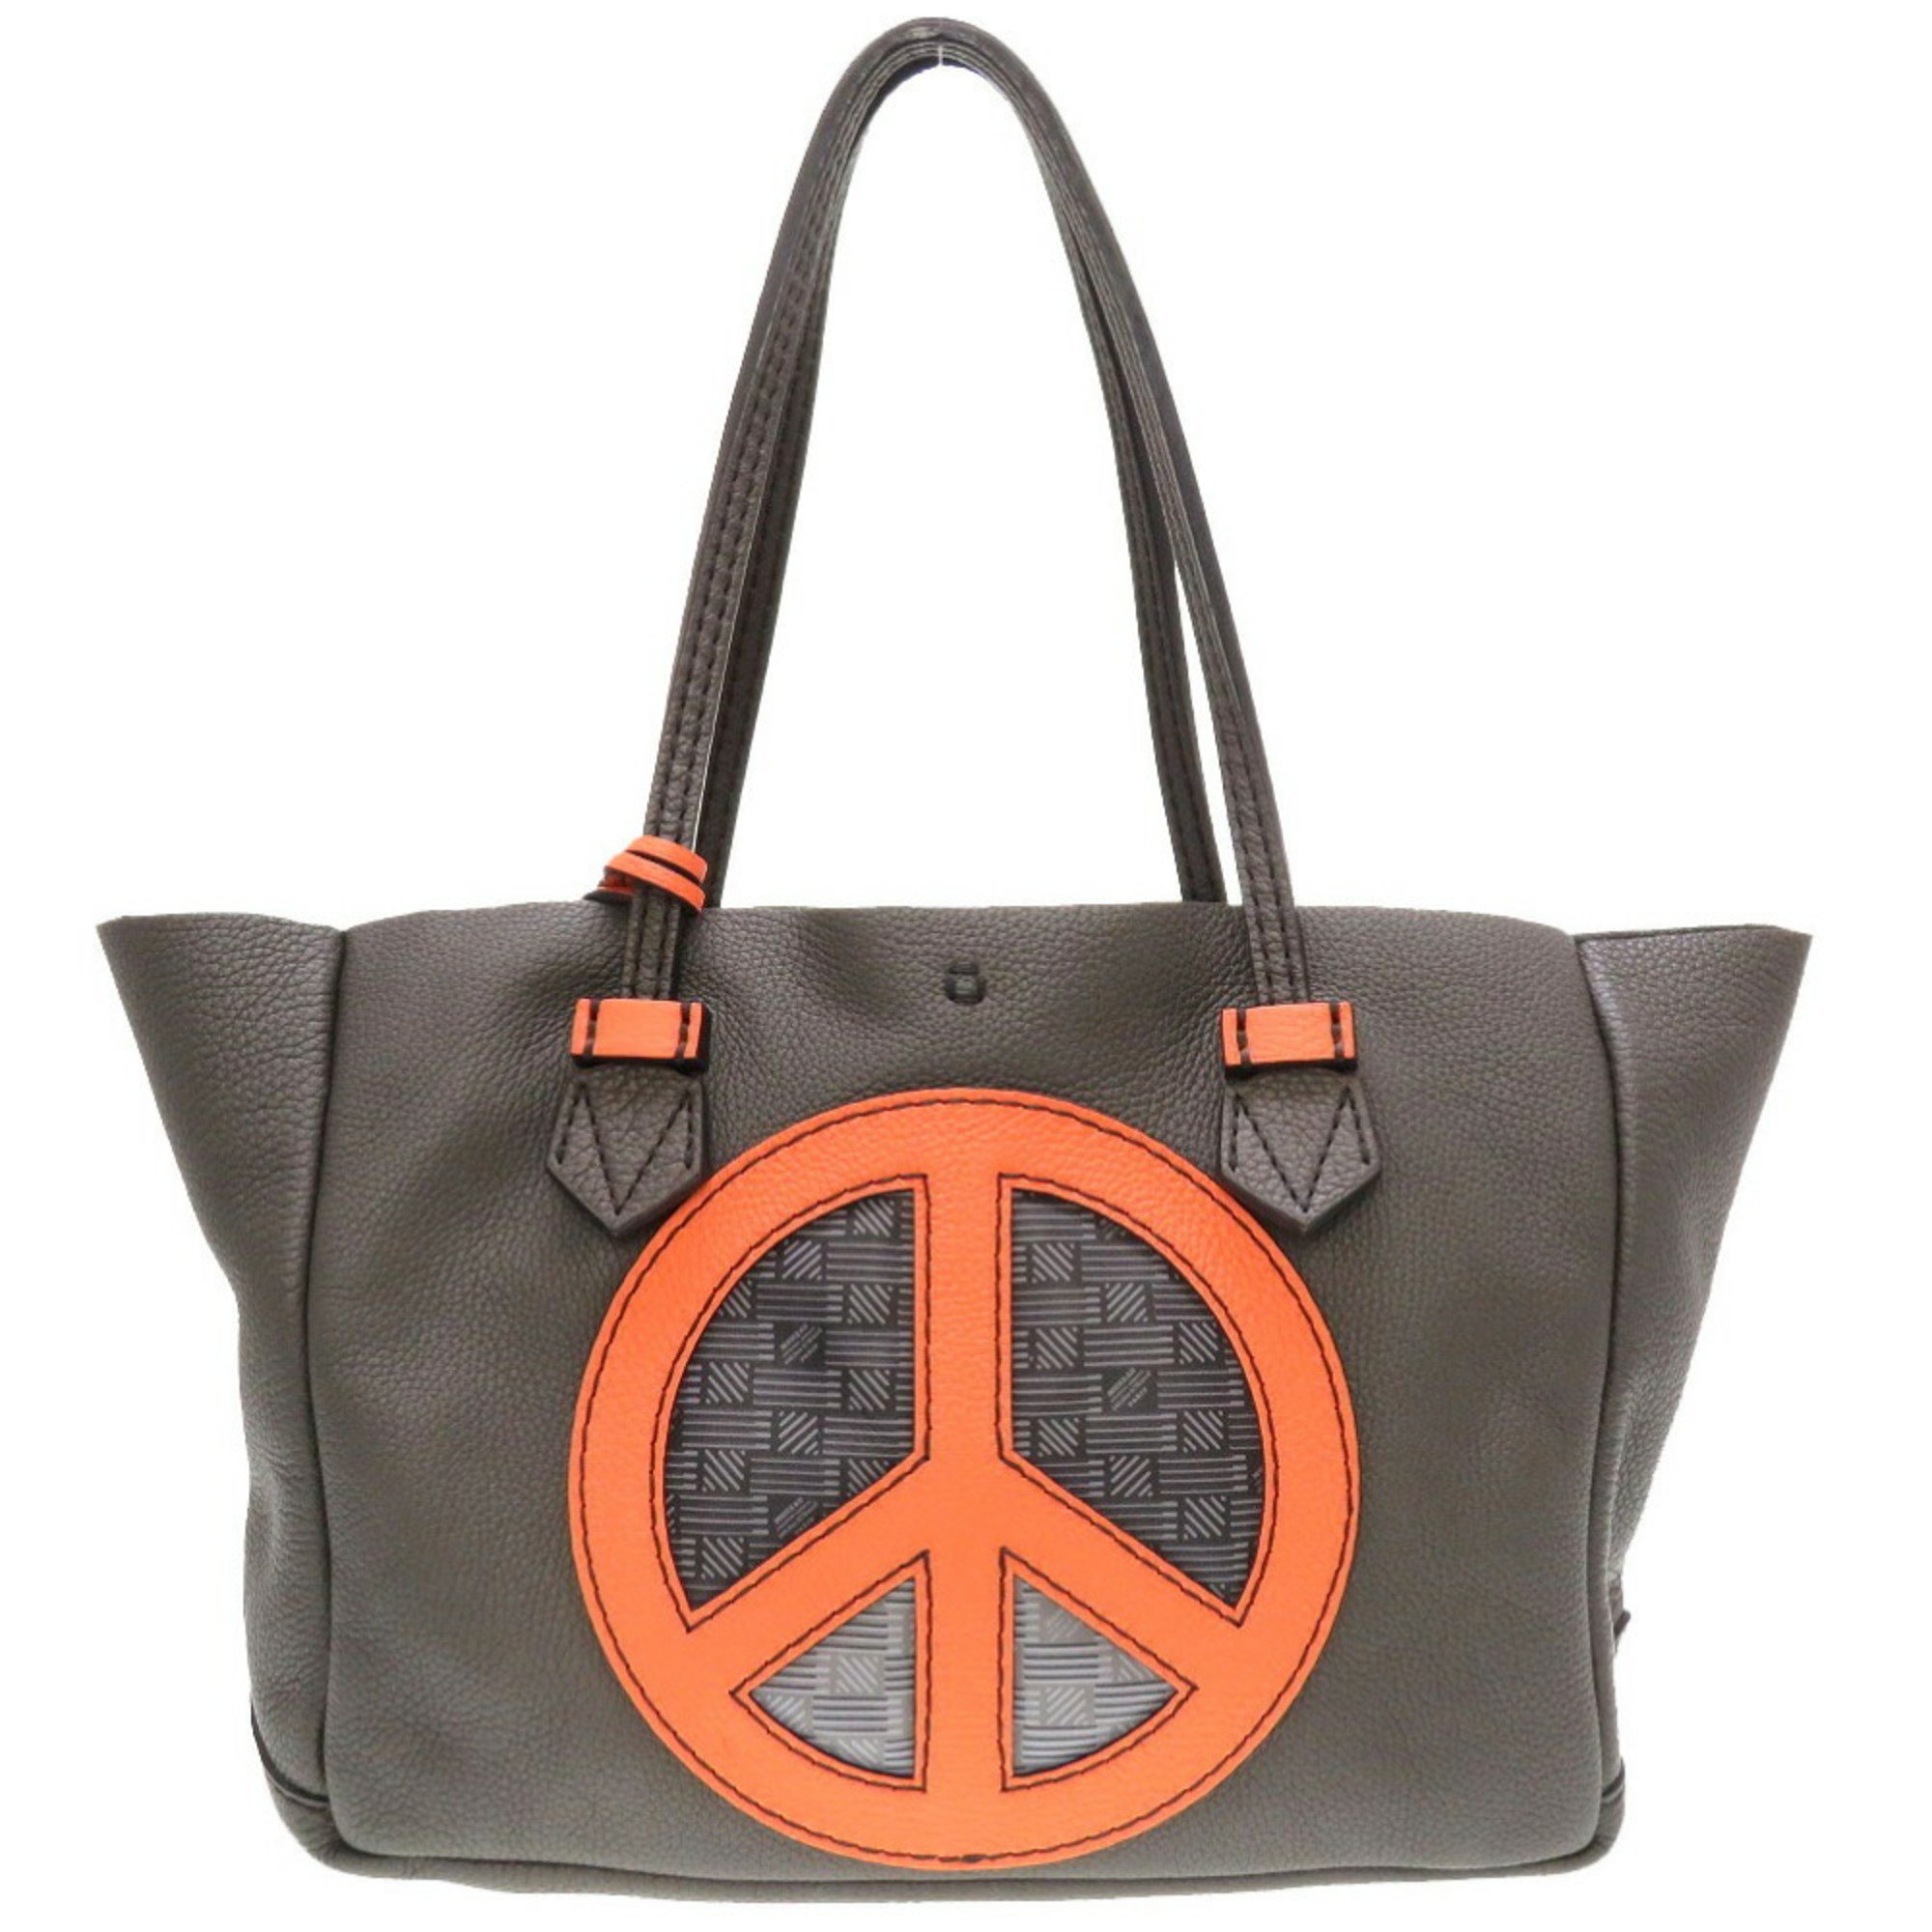 Moreau Paris Vincennes MM Peacemark Leather Gray Tote Bag